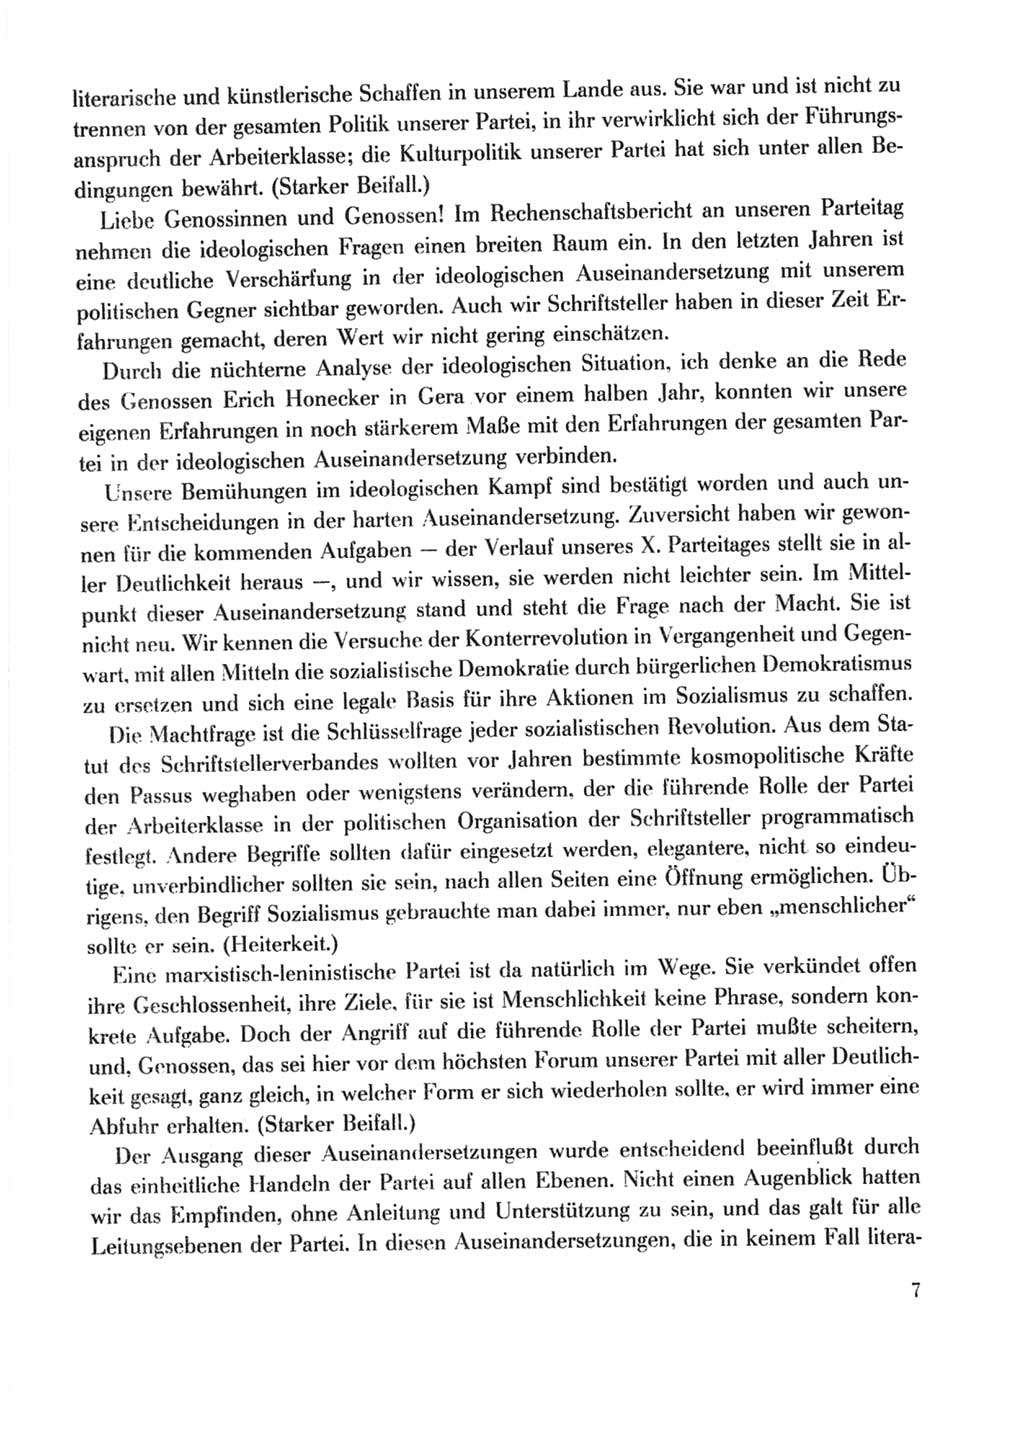 Protokoll der Verhandlungen des Ⅹ. Parteitages der Sozialistischen Einheitspartei Deutschlands (SED) [Deutsche Demokratische Republik (DDR)] 1981, Band 2, Seite 7 (Prot. Verh. Ⅹ. PT SED DDR 1981, Bd. 2, S. 7)